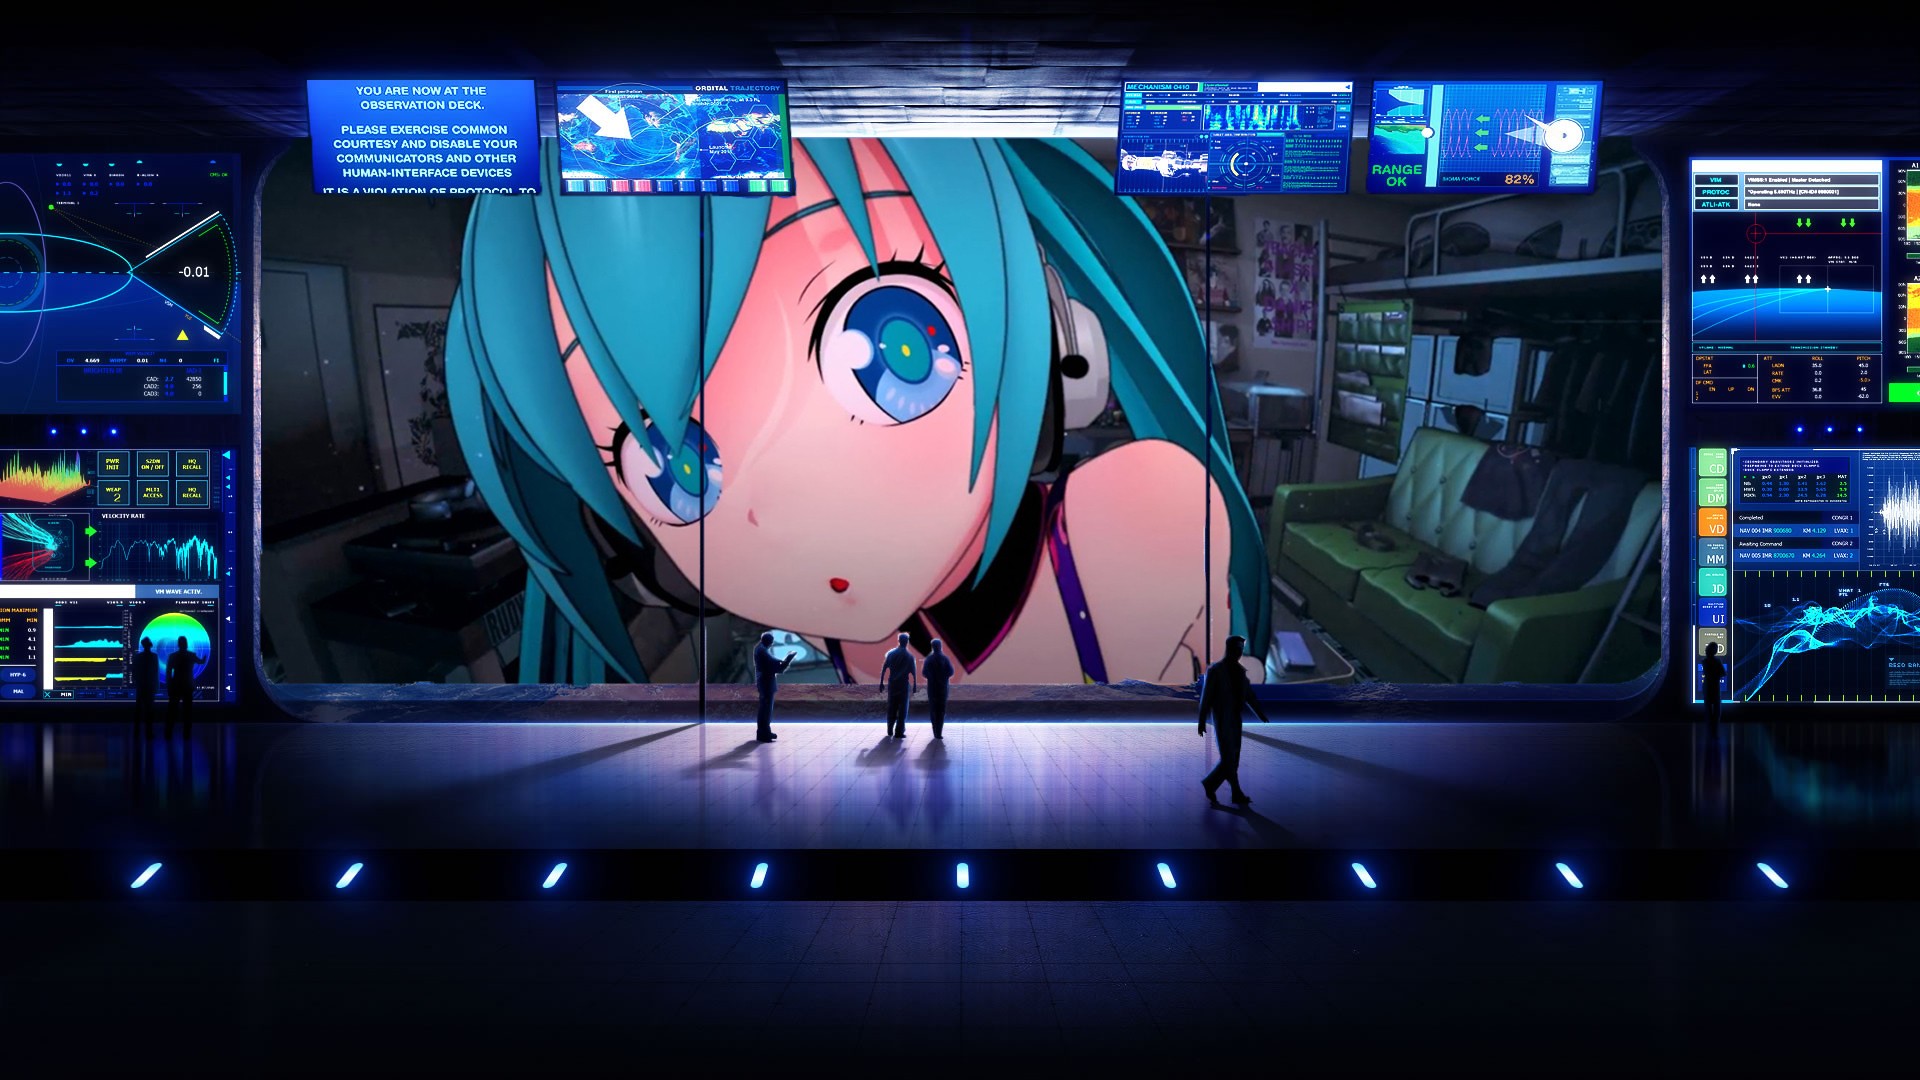 Wallpaper, anime girls, space, Vocaloid, Hatsune Miku, technology, machine, screenshot, gadget, computer wallpaper, display device 1920x1080